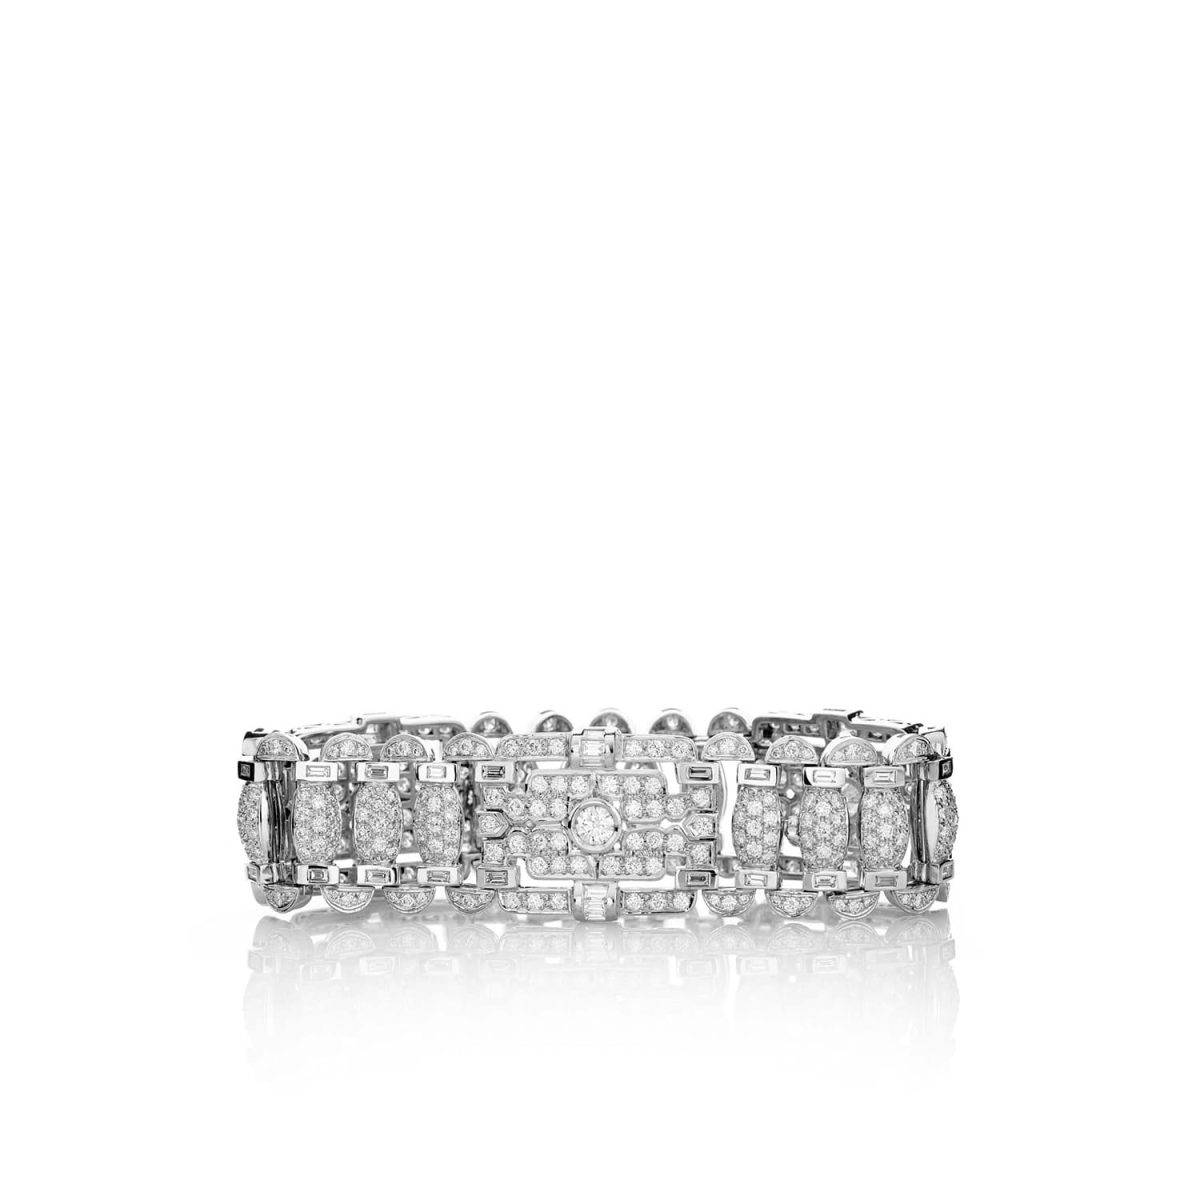 Pulsera Sole Pulsera de oro blanco de 18K adornada con 11,53ct de diamantes talla brillante y 3,48ct de diamantes talla baguette.